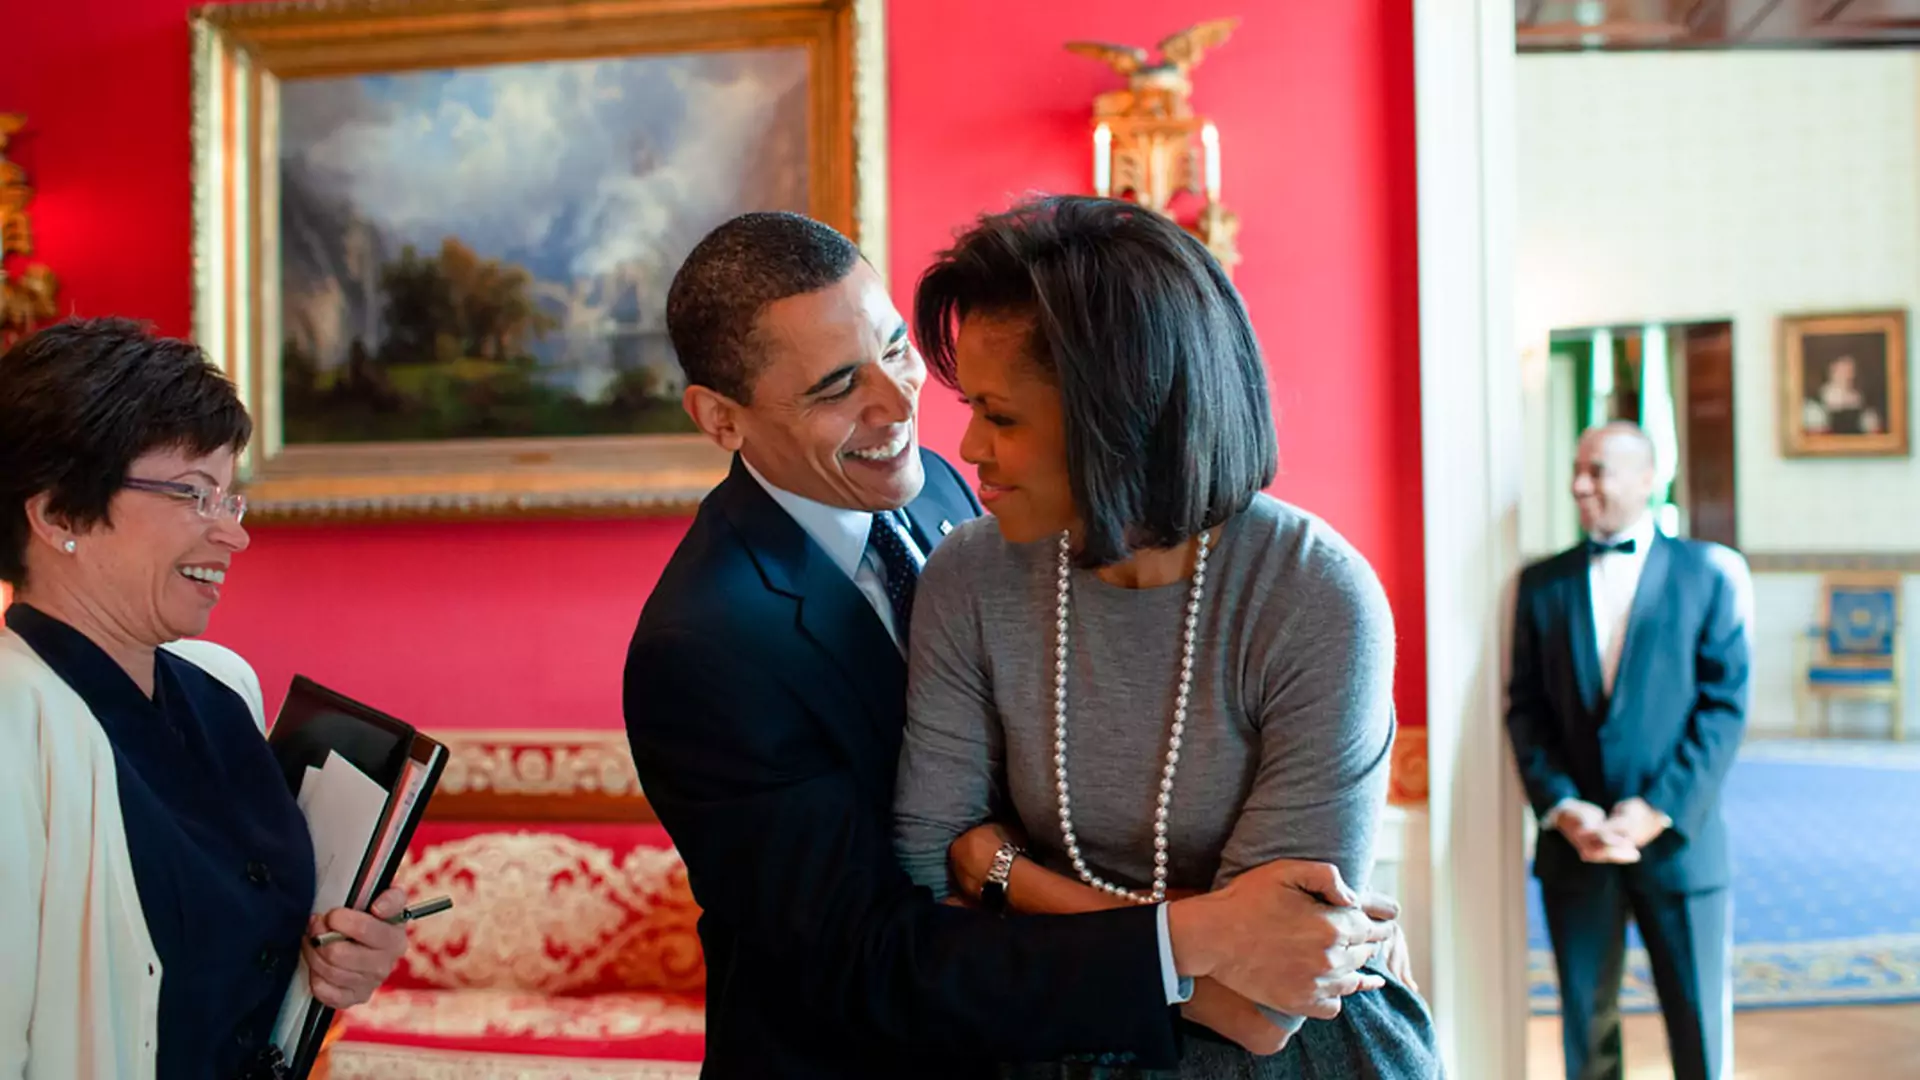 "Zastanawiam się, czy zachowanie Michelle nie było bardziej szczere". Fragment autobiografii Baracka Obamy